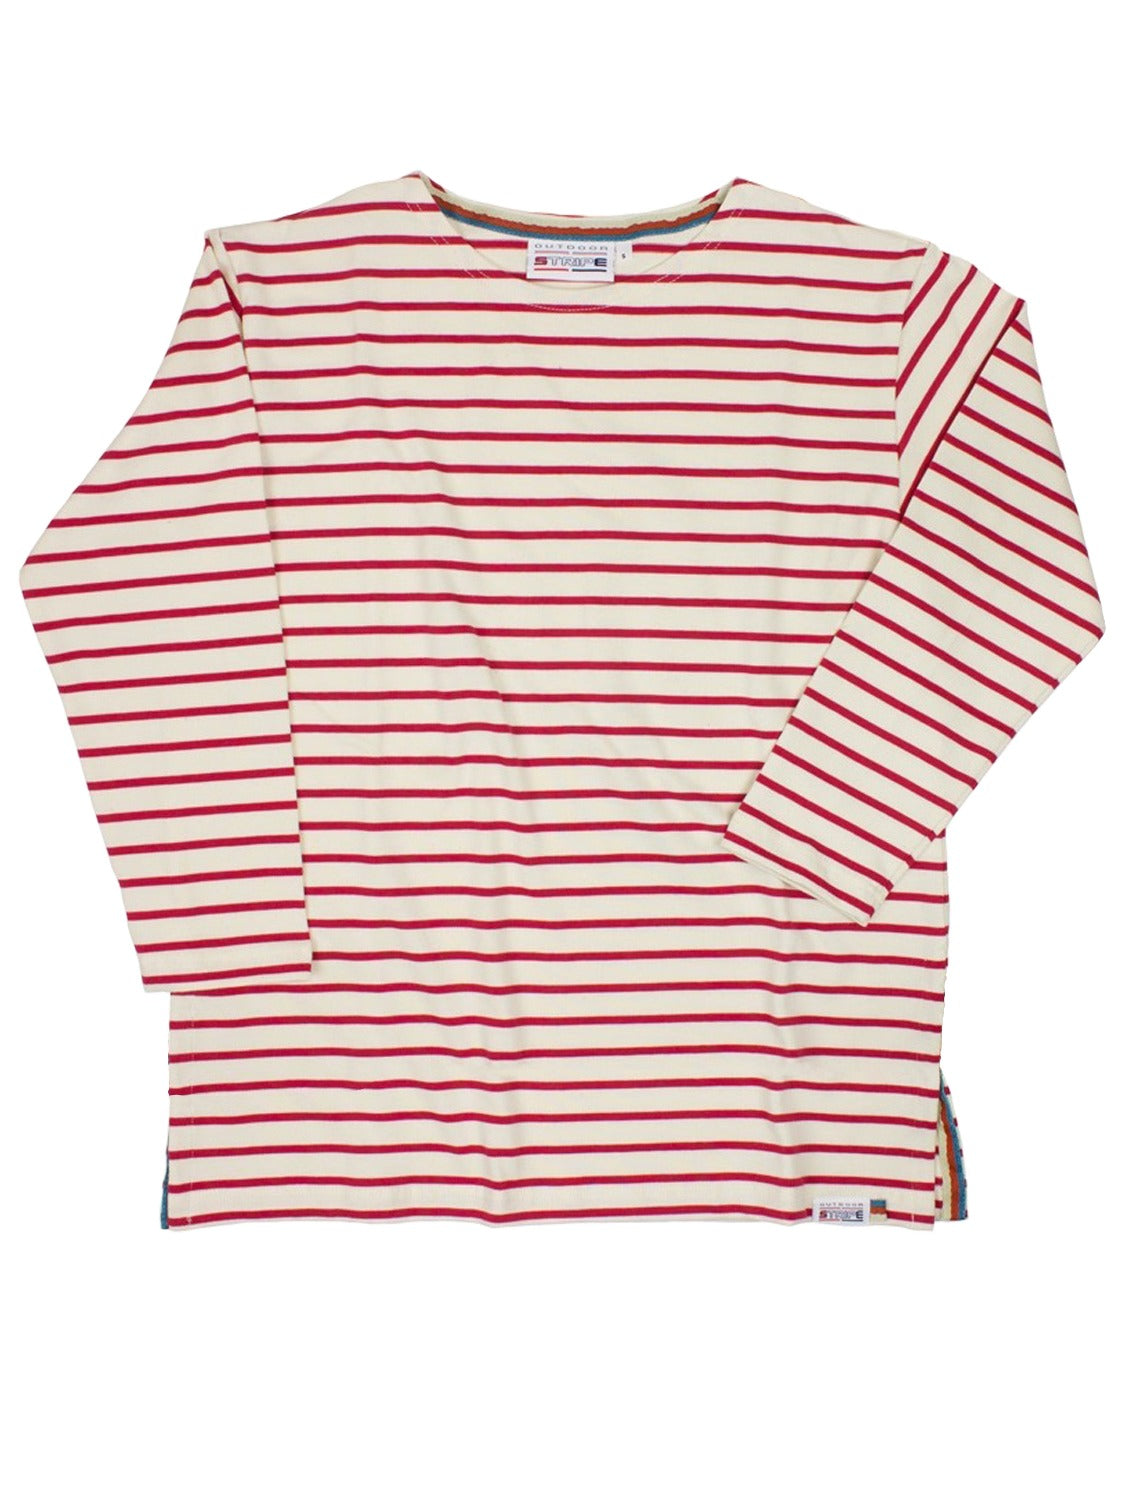 ophavsret Rejse genvinde Breton Stripe Sailor Shirt